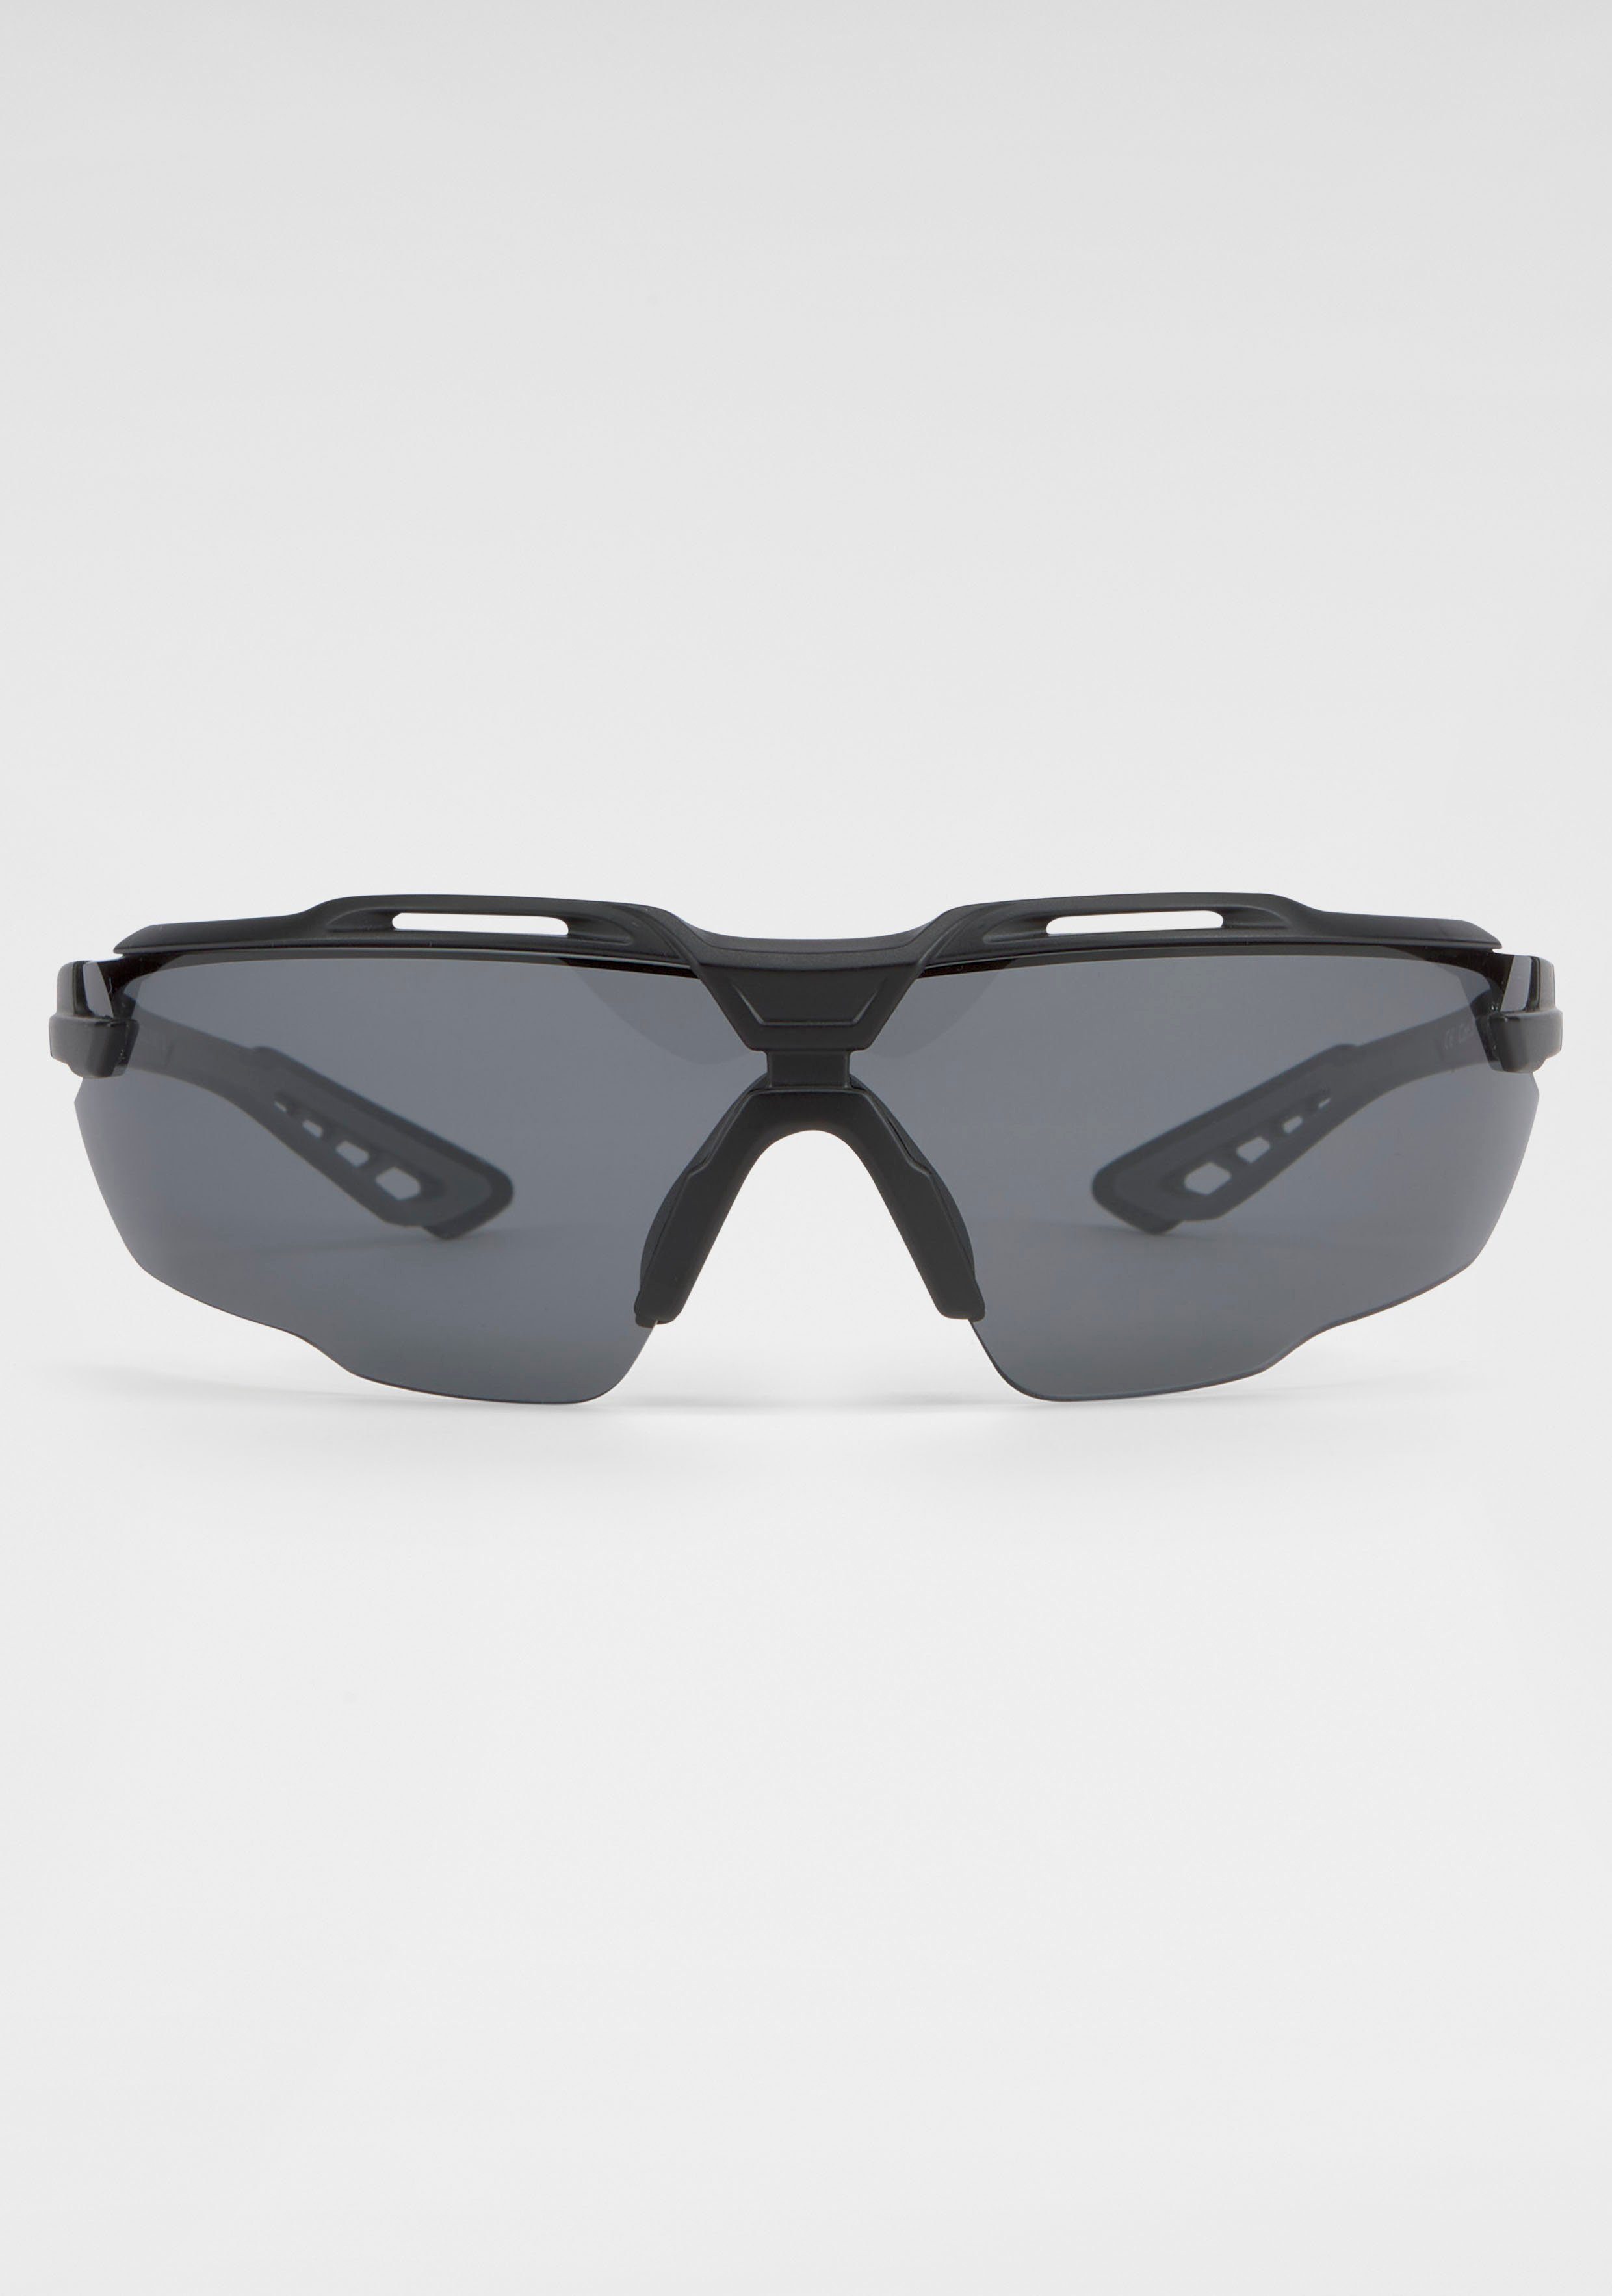 Venice Beach Sonnenbrille schwarz Gläser Große